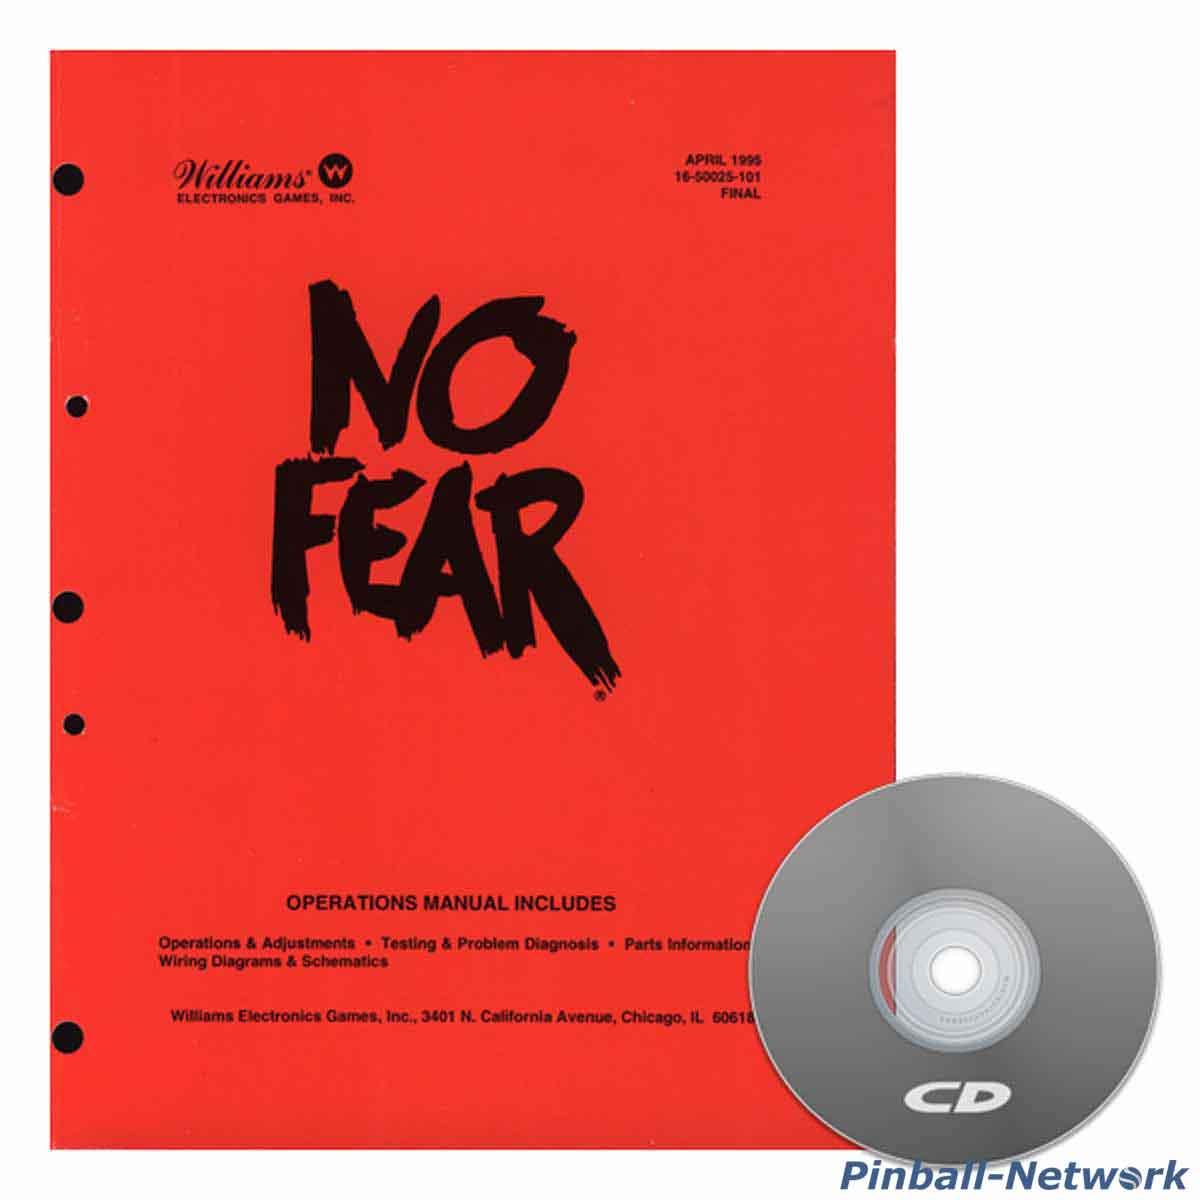 No Fear Operations Manual